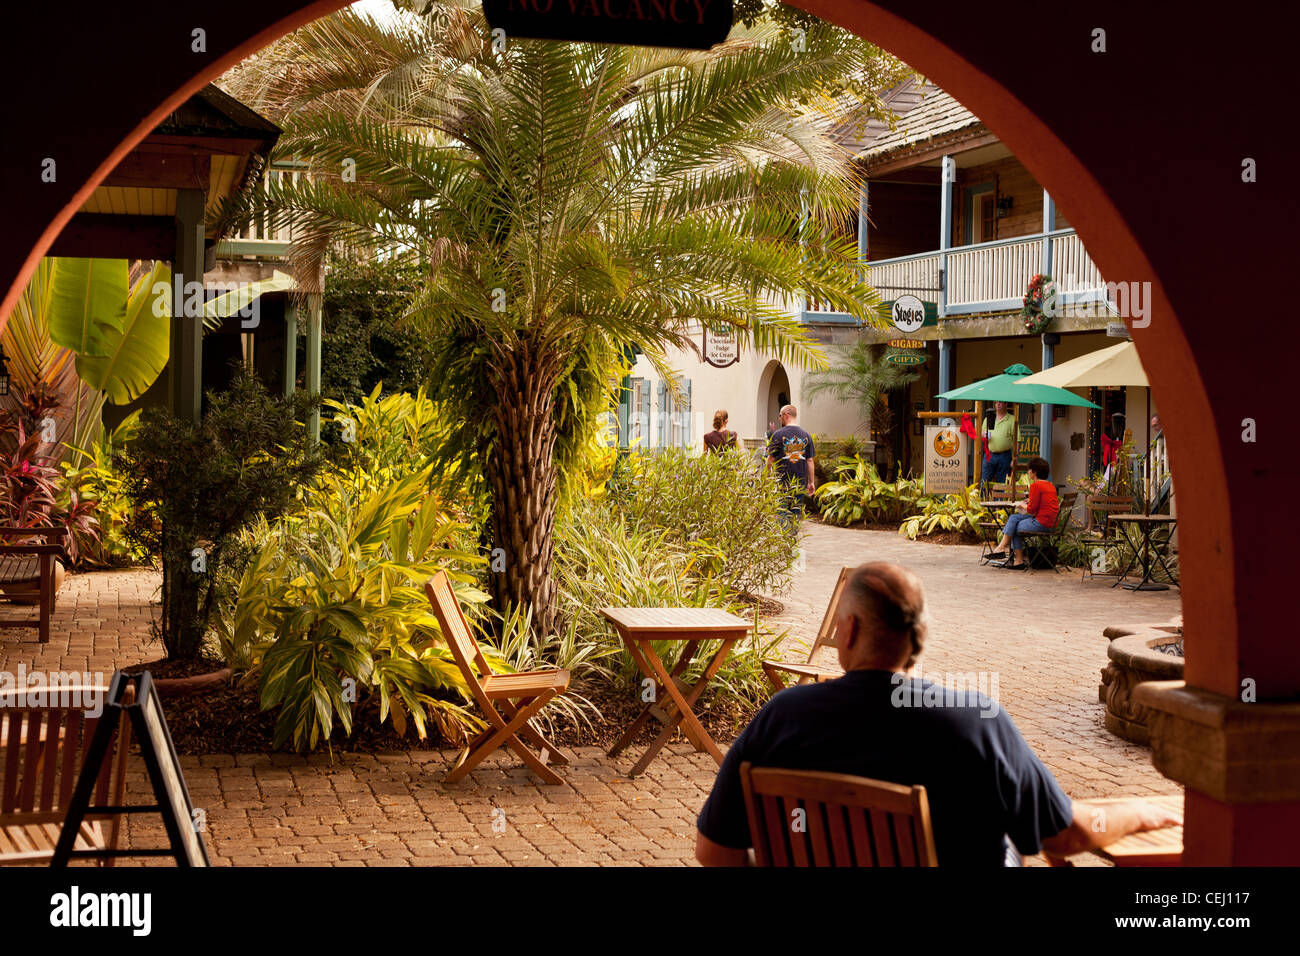 Quint kleinen Hof in St. Augustine Florida Usa, Geschäfte und Café im Hof, Brunnen im Hof, Coffee-Shops, Stockfoto